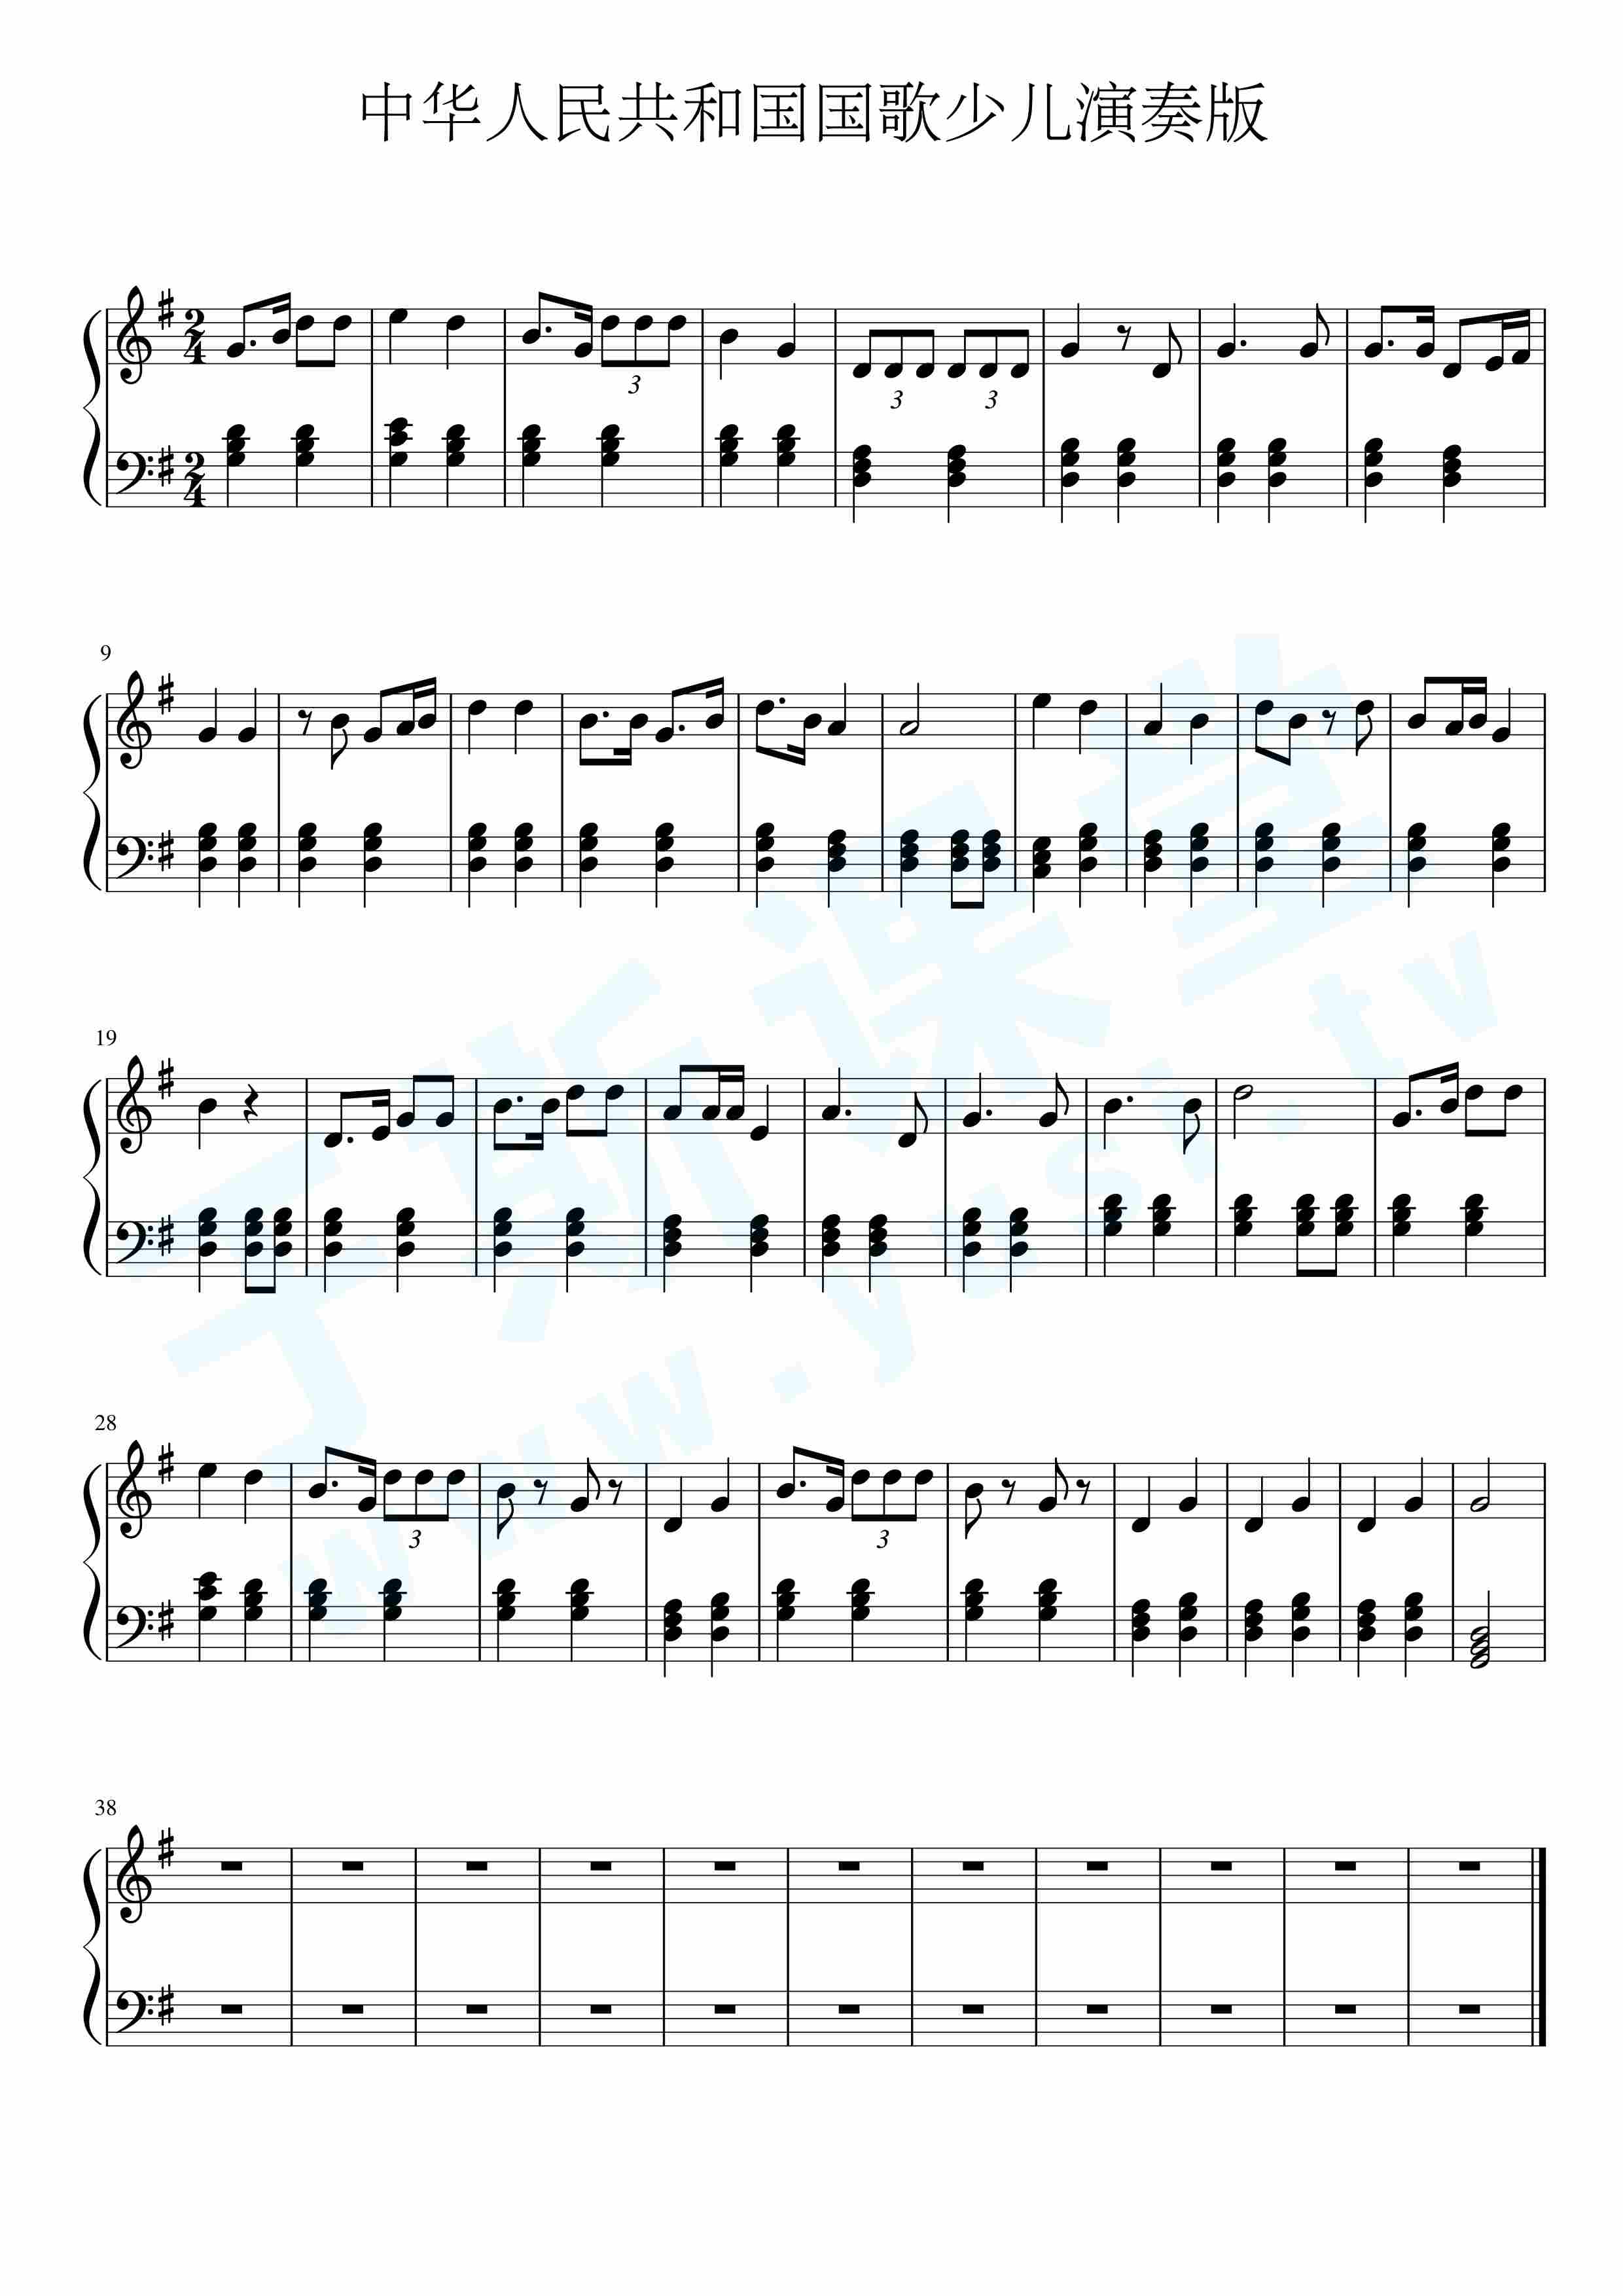 中华人民共和国国歌少儿简单版钢琴曲谱,于斯课堂精心